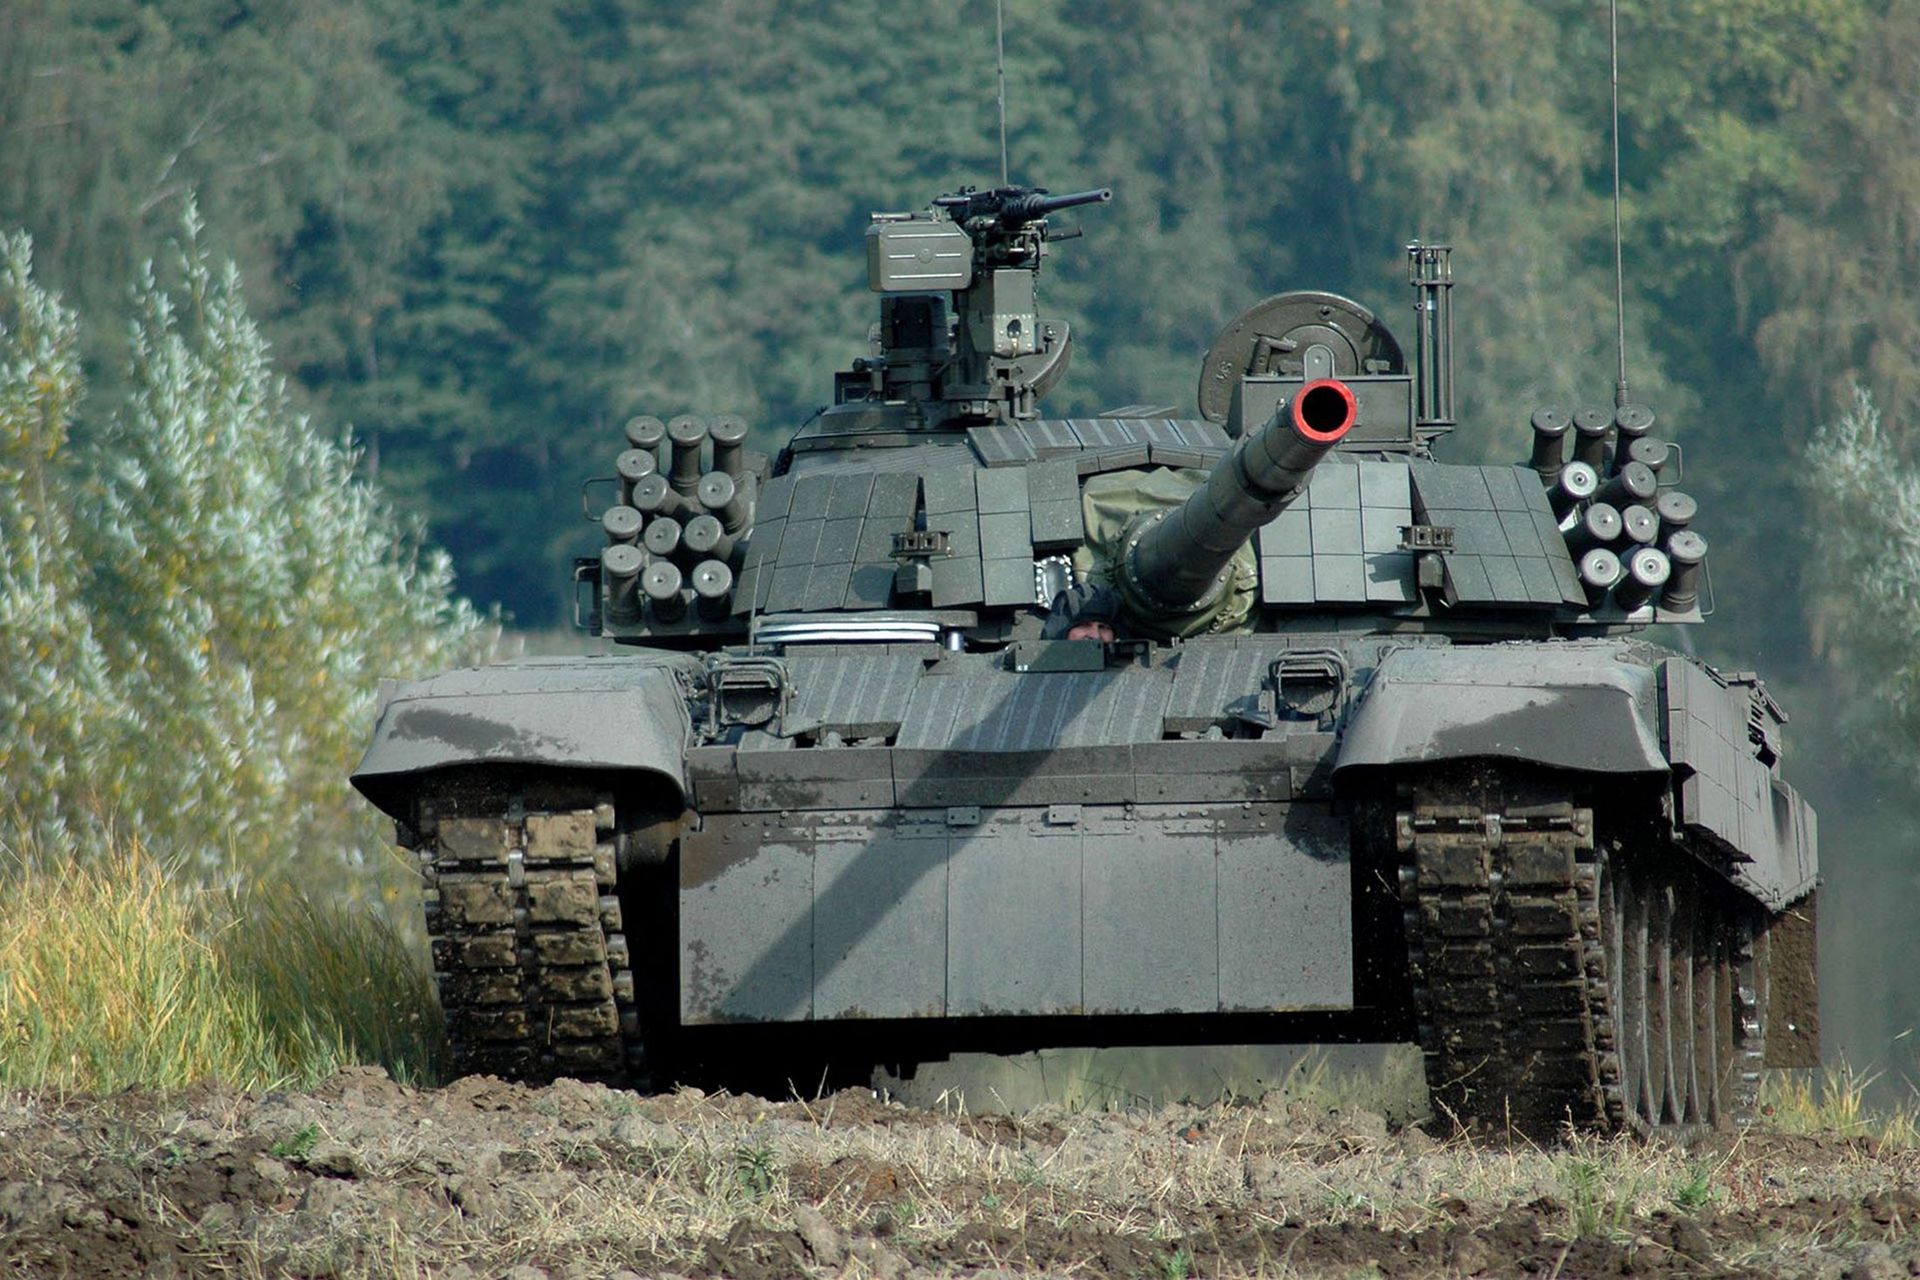 ukraińcy chwalą polski czołg. wskazują jeden element